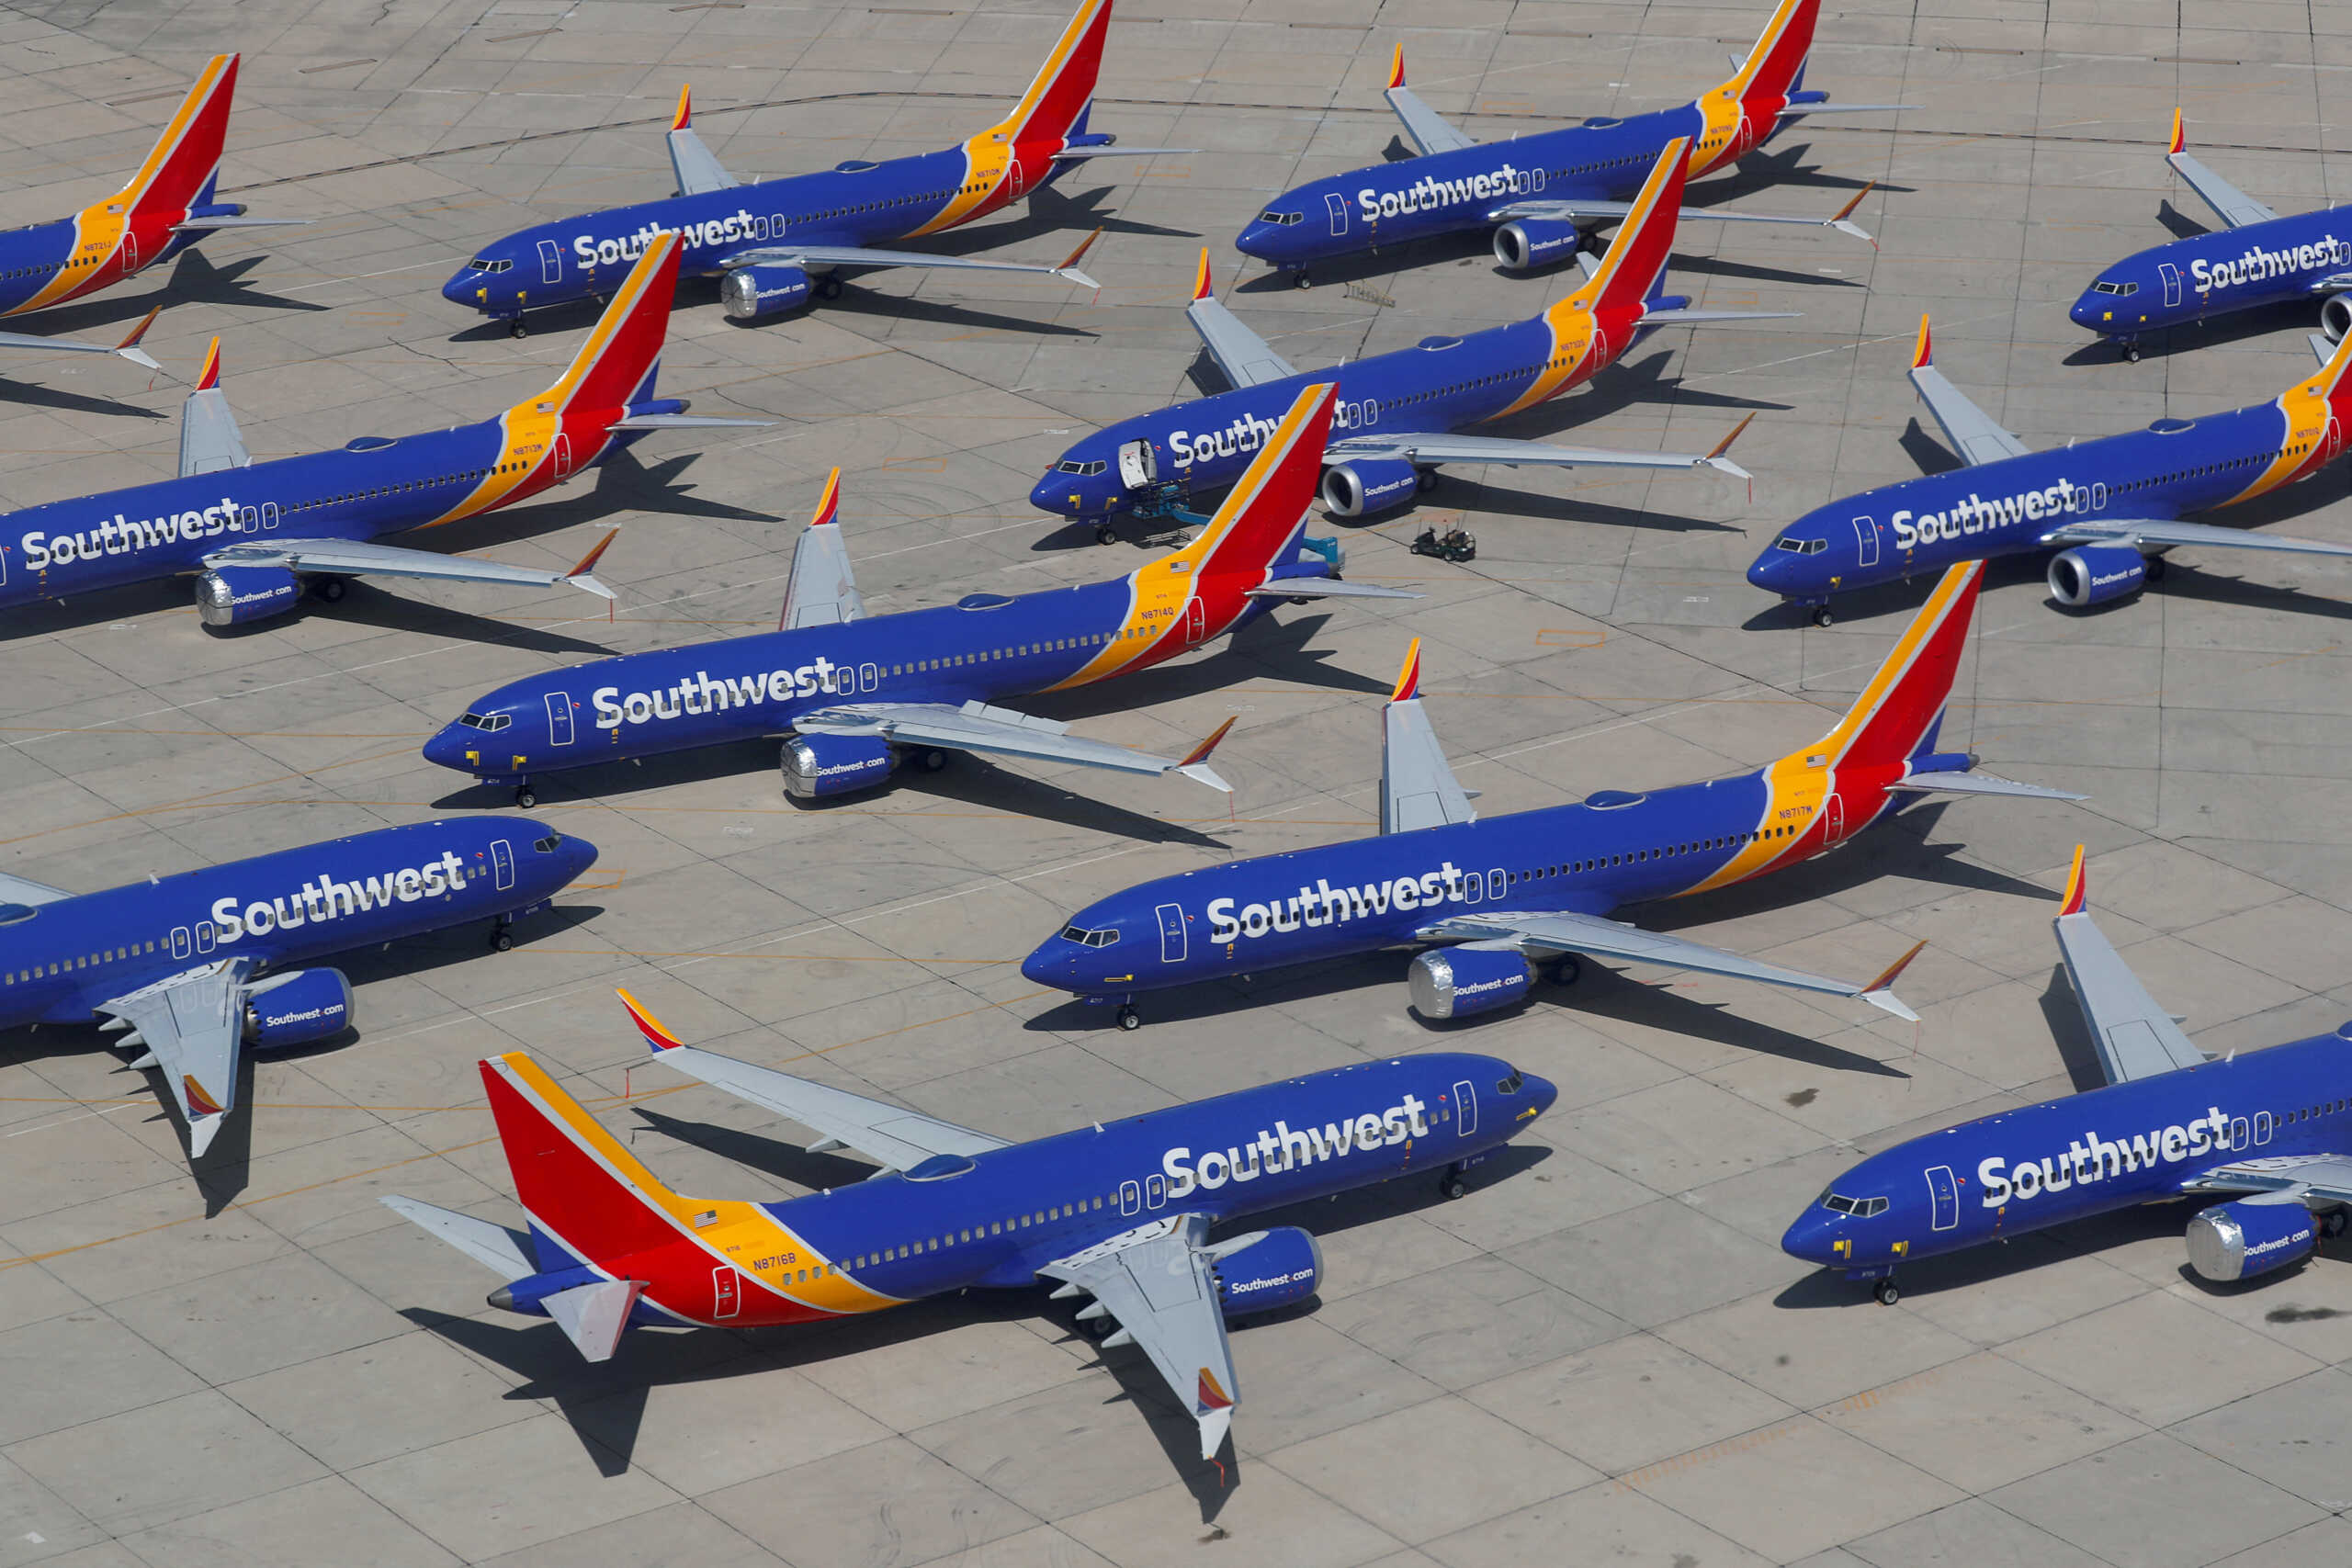 ΗΠΑ: Αναστάτωση για τα αεροσκάφη της Southwest Airlines που καθηλώθηκαν λόγω τεχνικών προβλημάτων